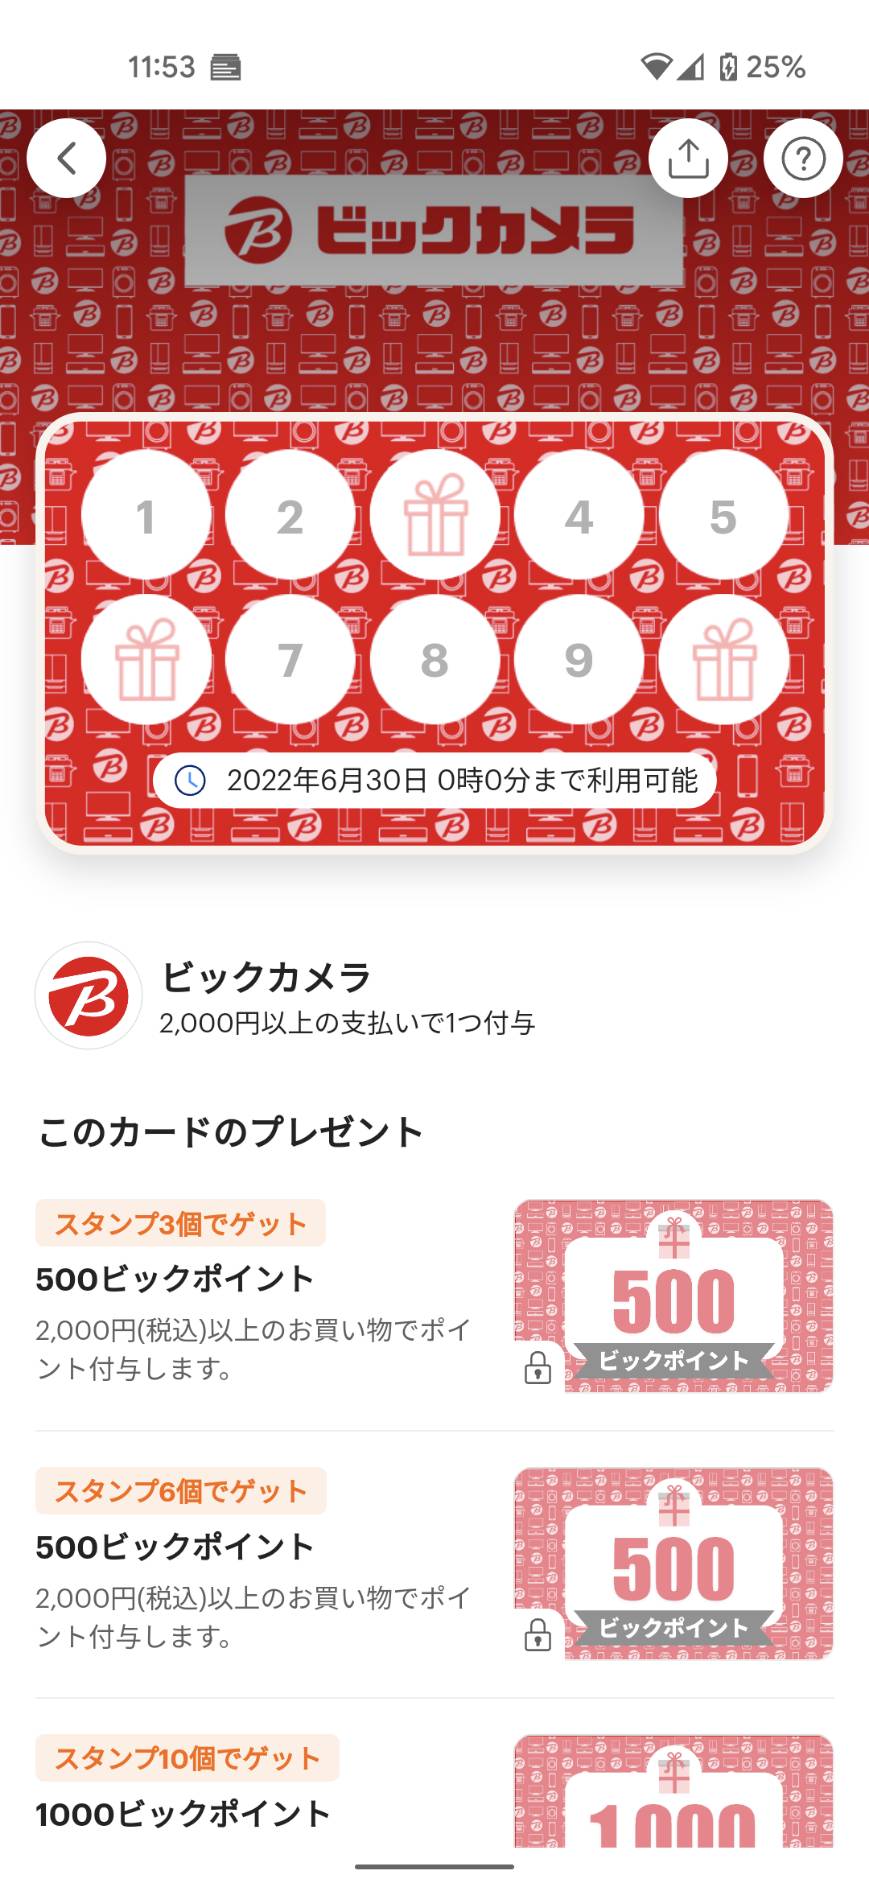 PayPayスタンプカードでビックカメラで2000円以上×3回買い物をすると500ポイントが貰える。～6/29。